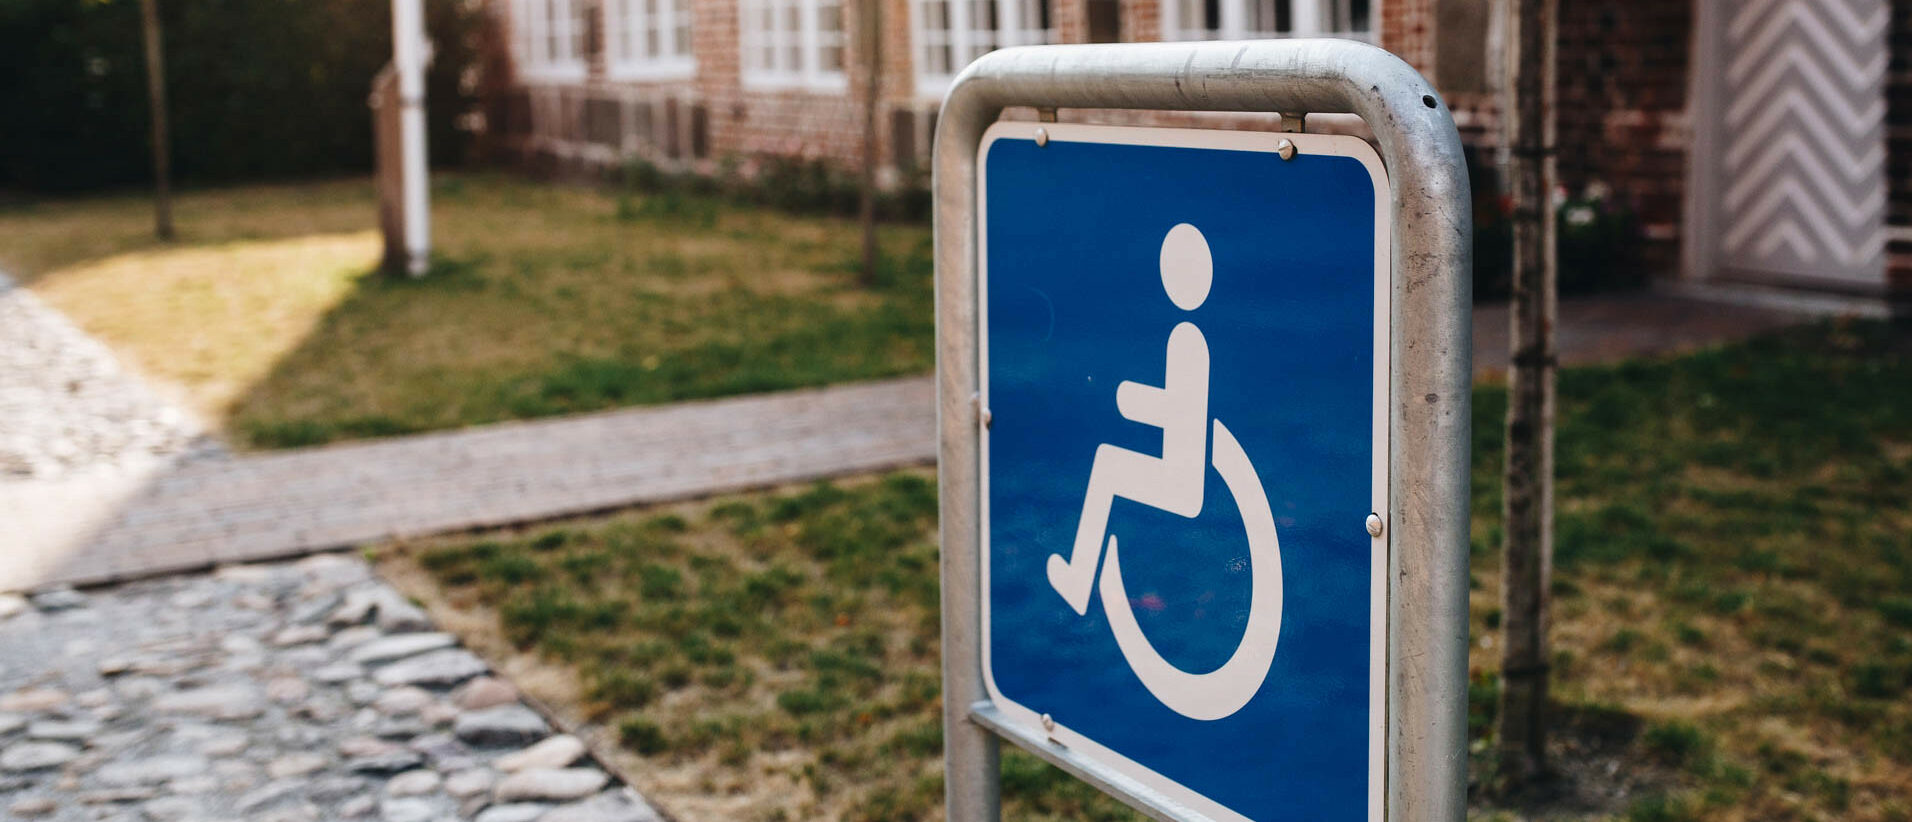 Les soins aux personnes handicapées atteintes du Covid-19 sont particulièrement compliqués | photo d'illustration © Marco Verch/Flickr/CC BY 2.0